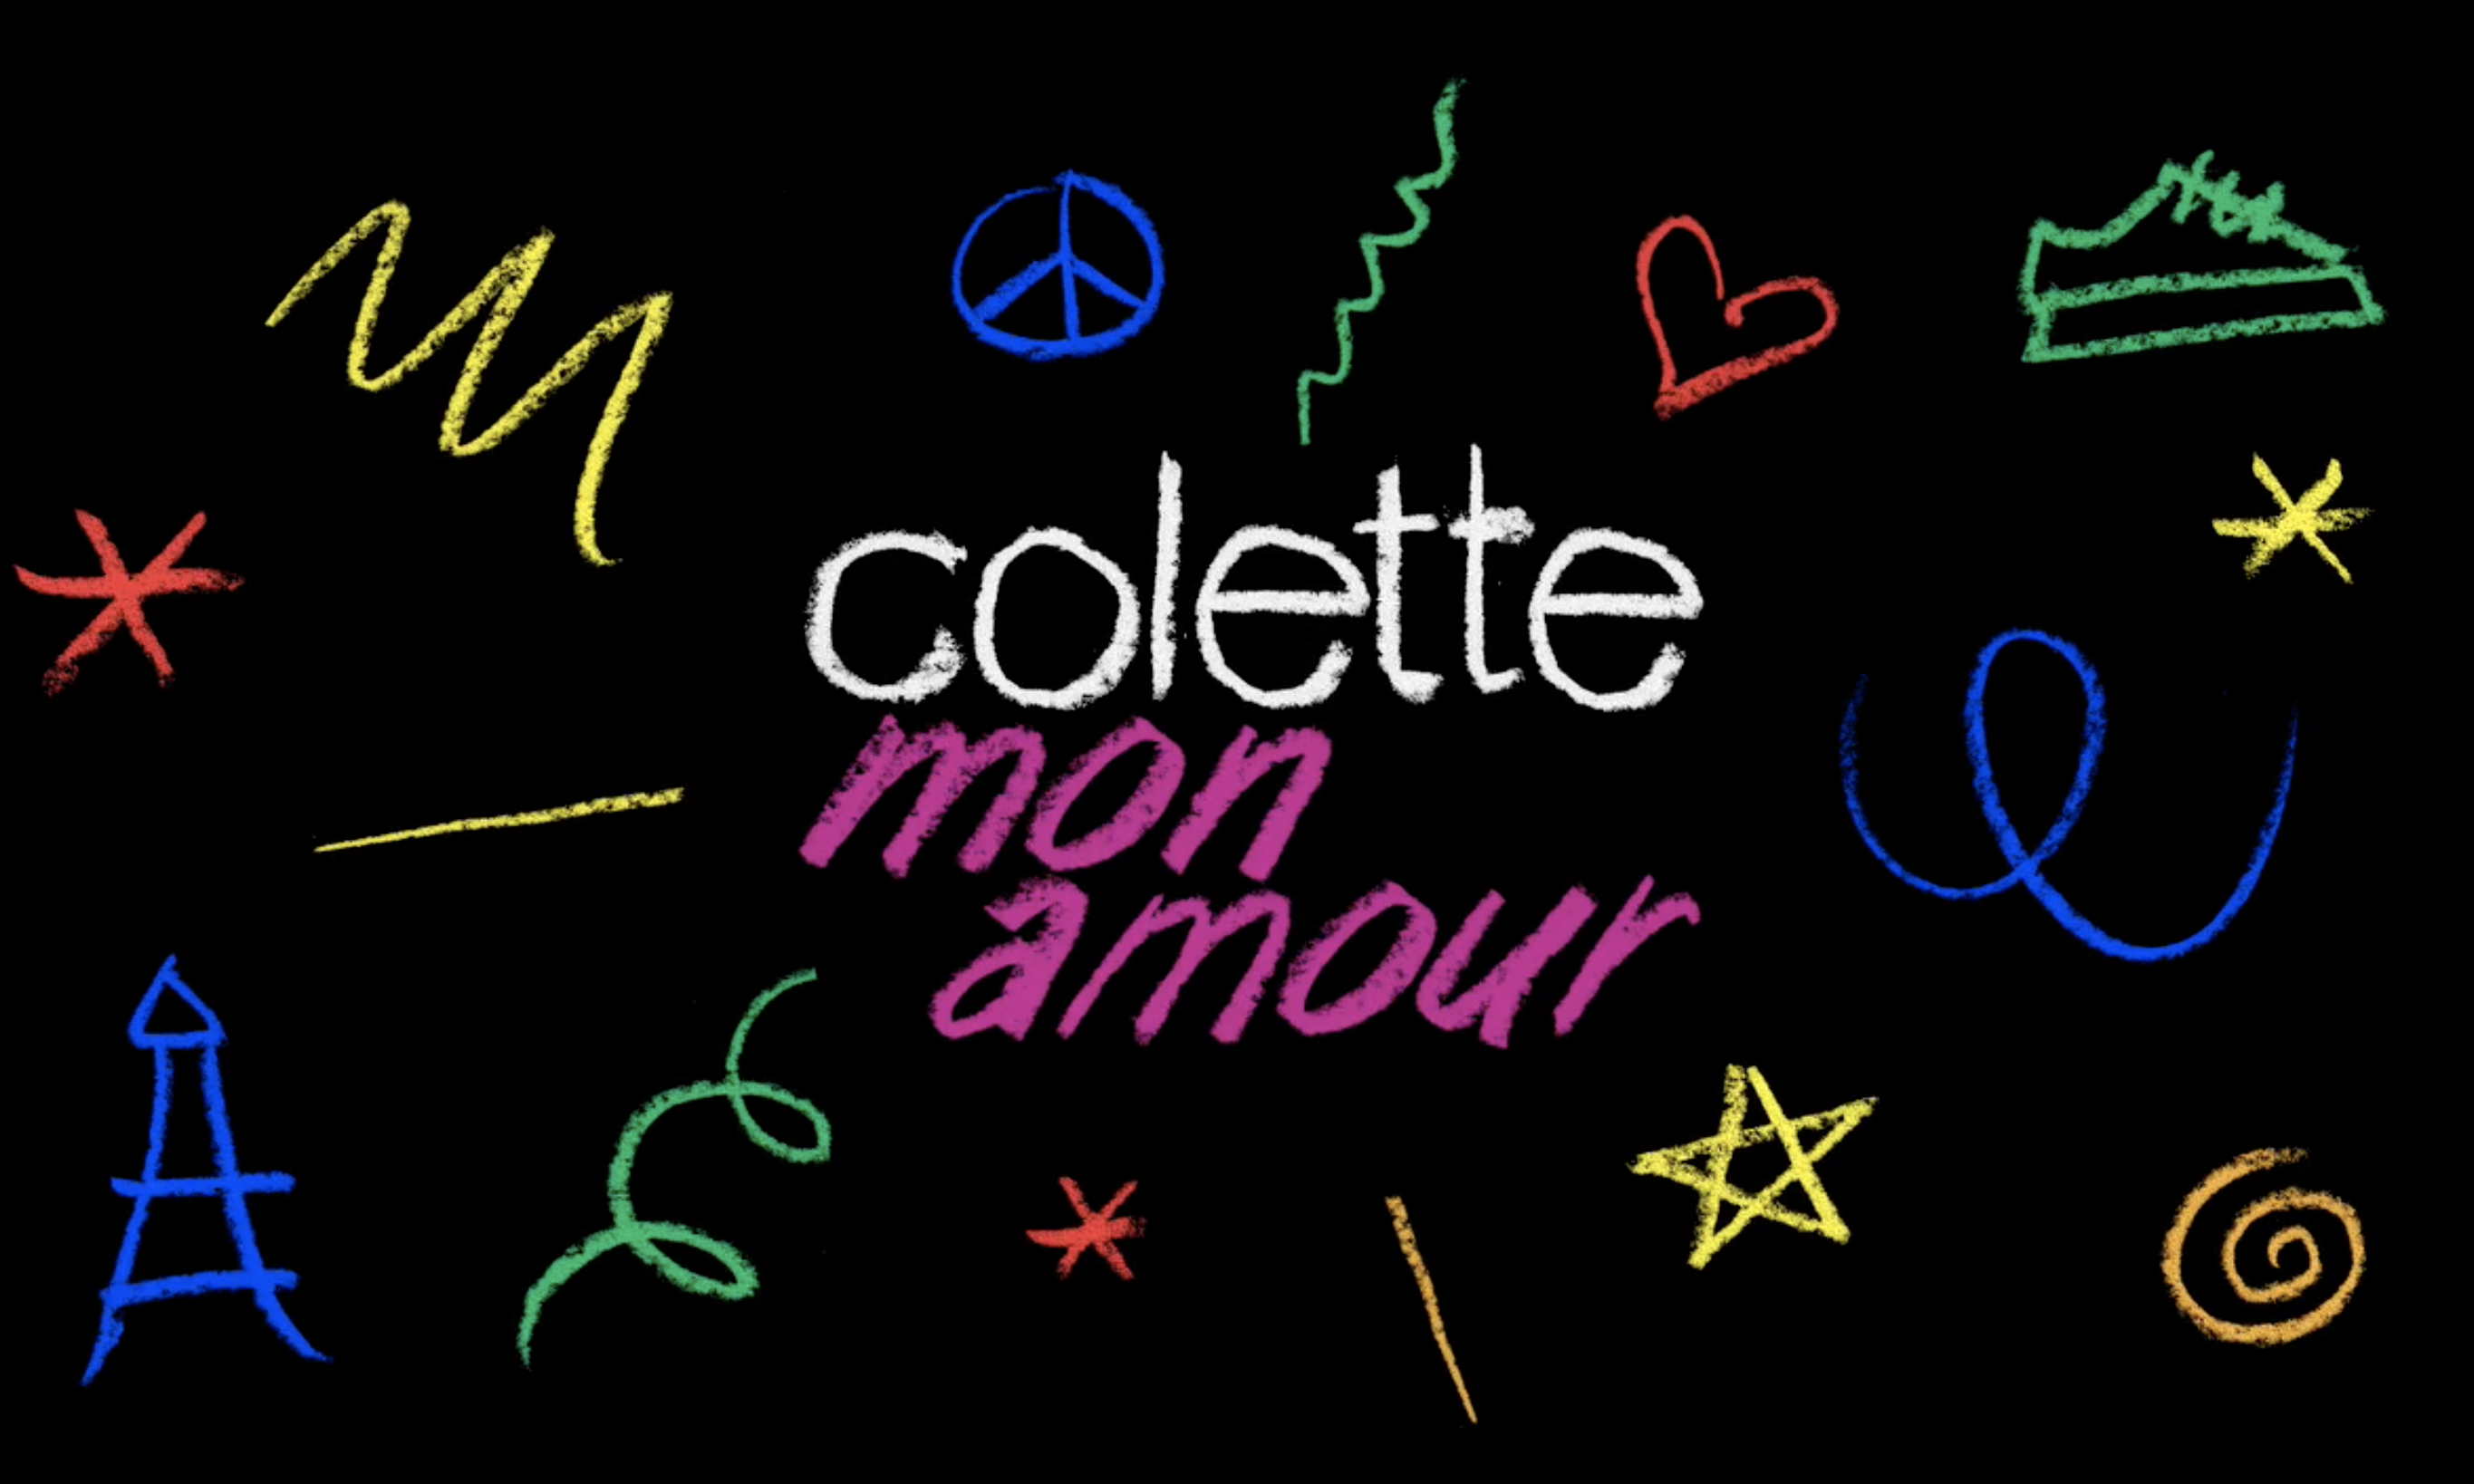 传奇名所 colette 纪录片《colette, mon amour》正在制作中